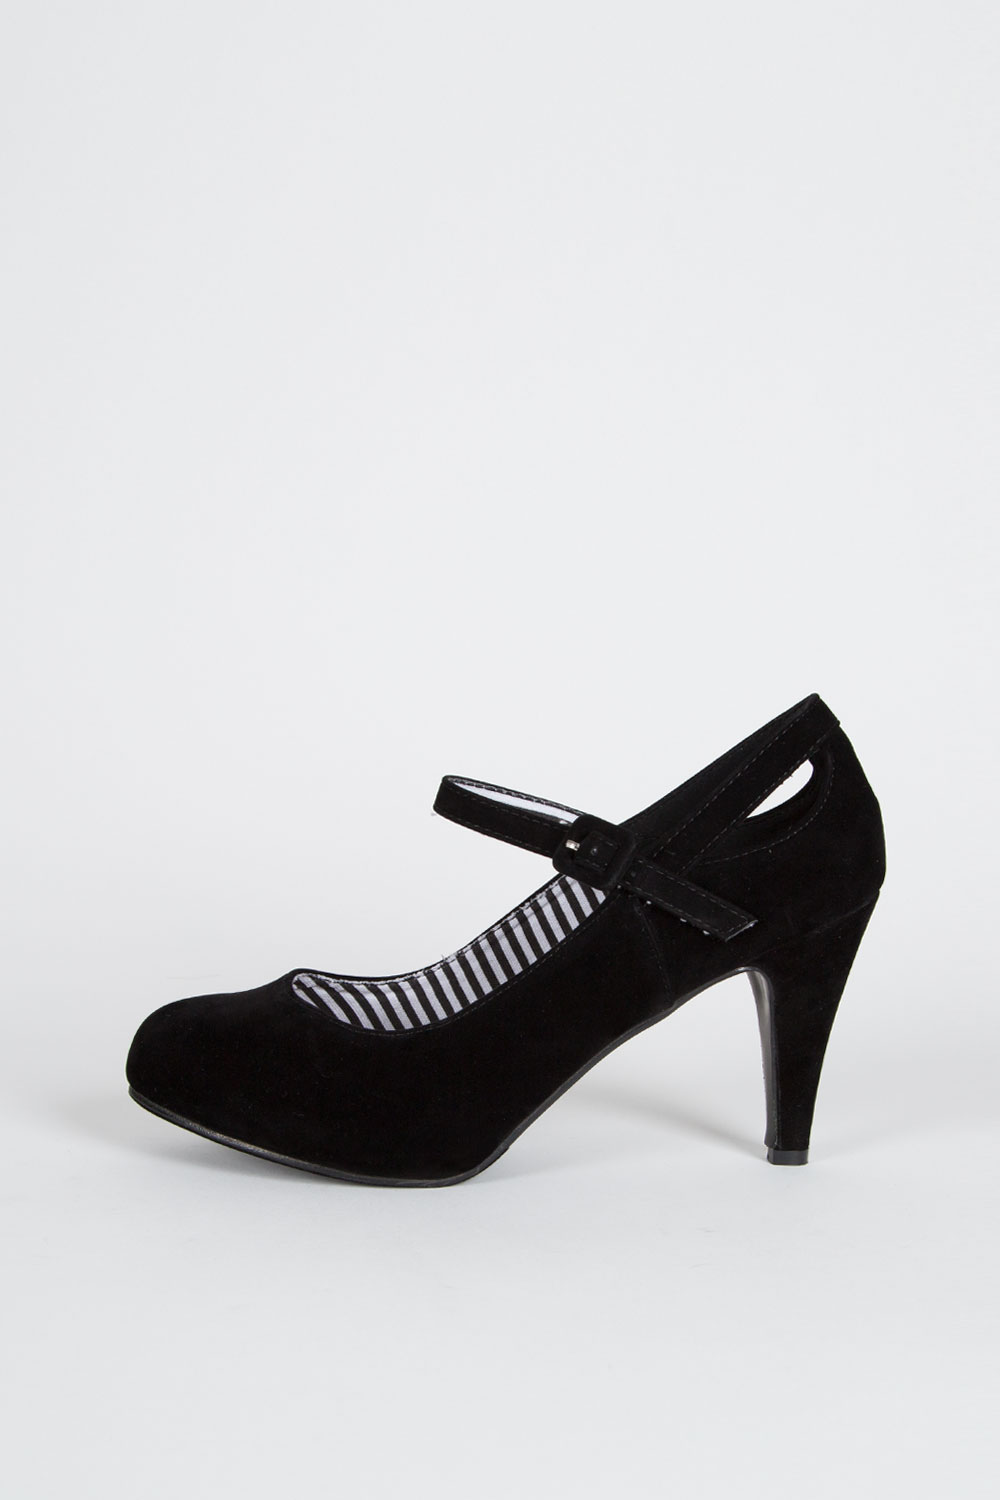 black medium high heels